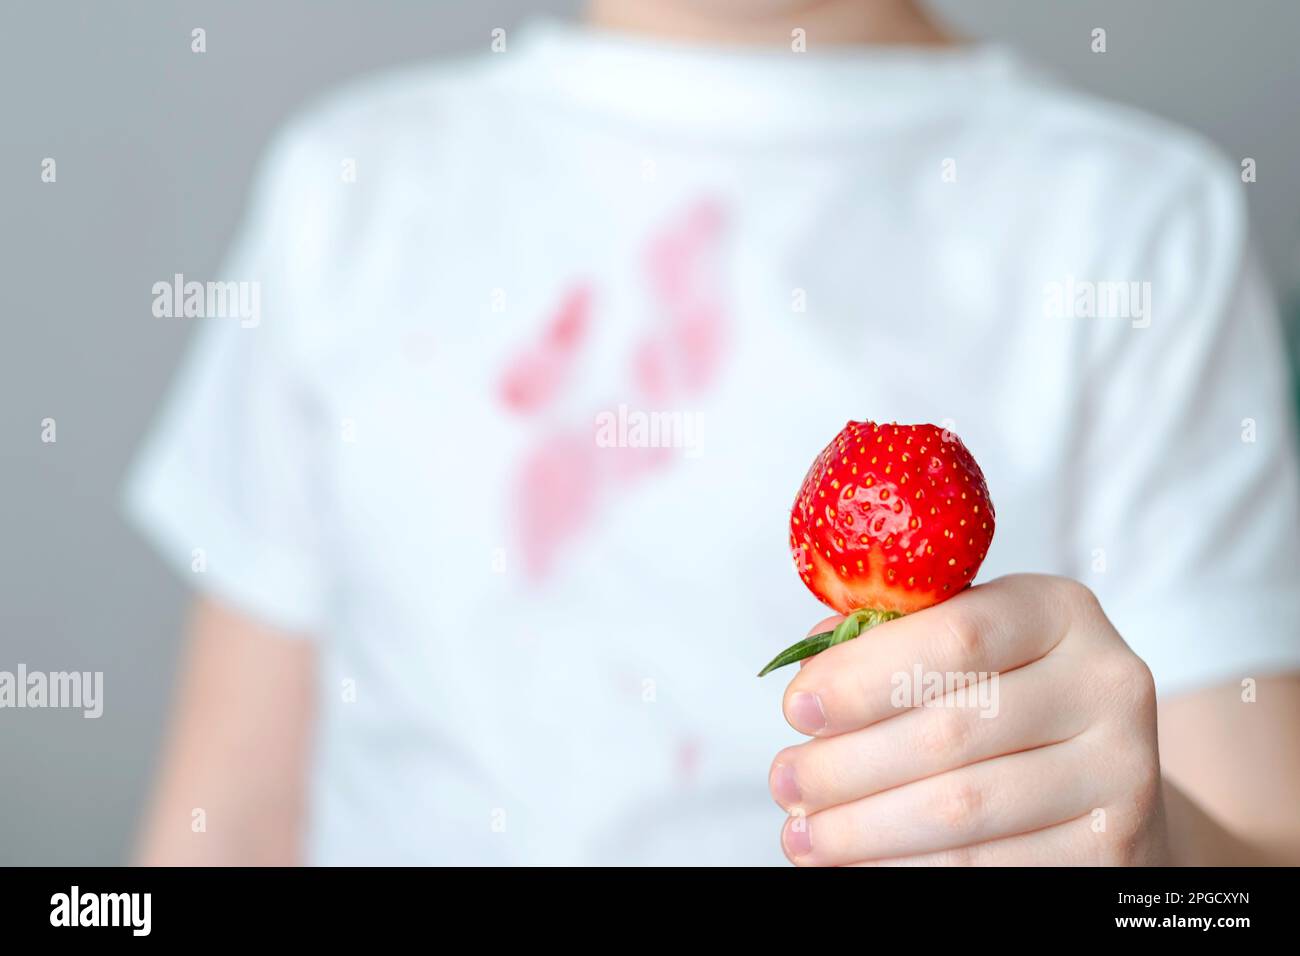 Ein schmutziger roter Fleck auf der Vorderseite eines weißen T-Shirts. Die Hand eines Kindes hält ein Stück Erdbeere in der Hand. Stockfoto